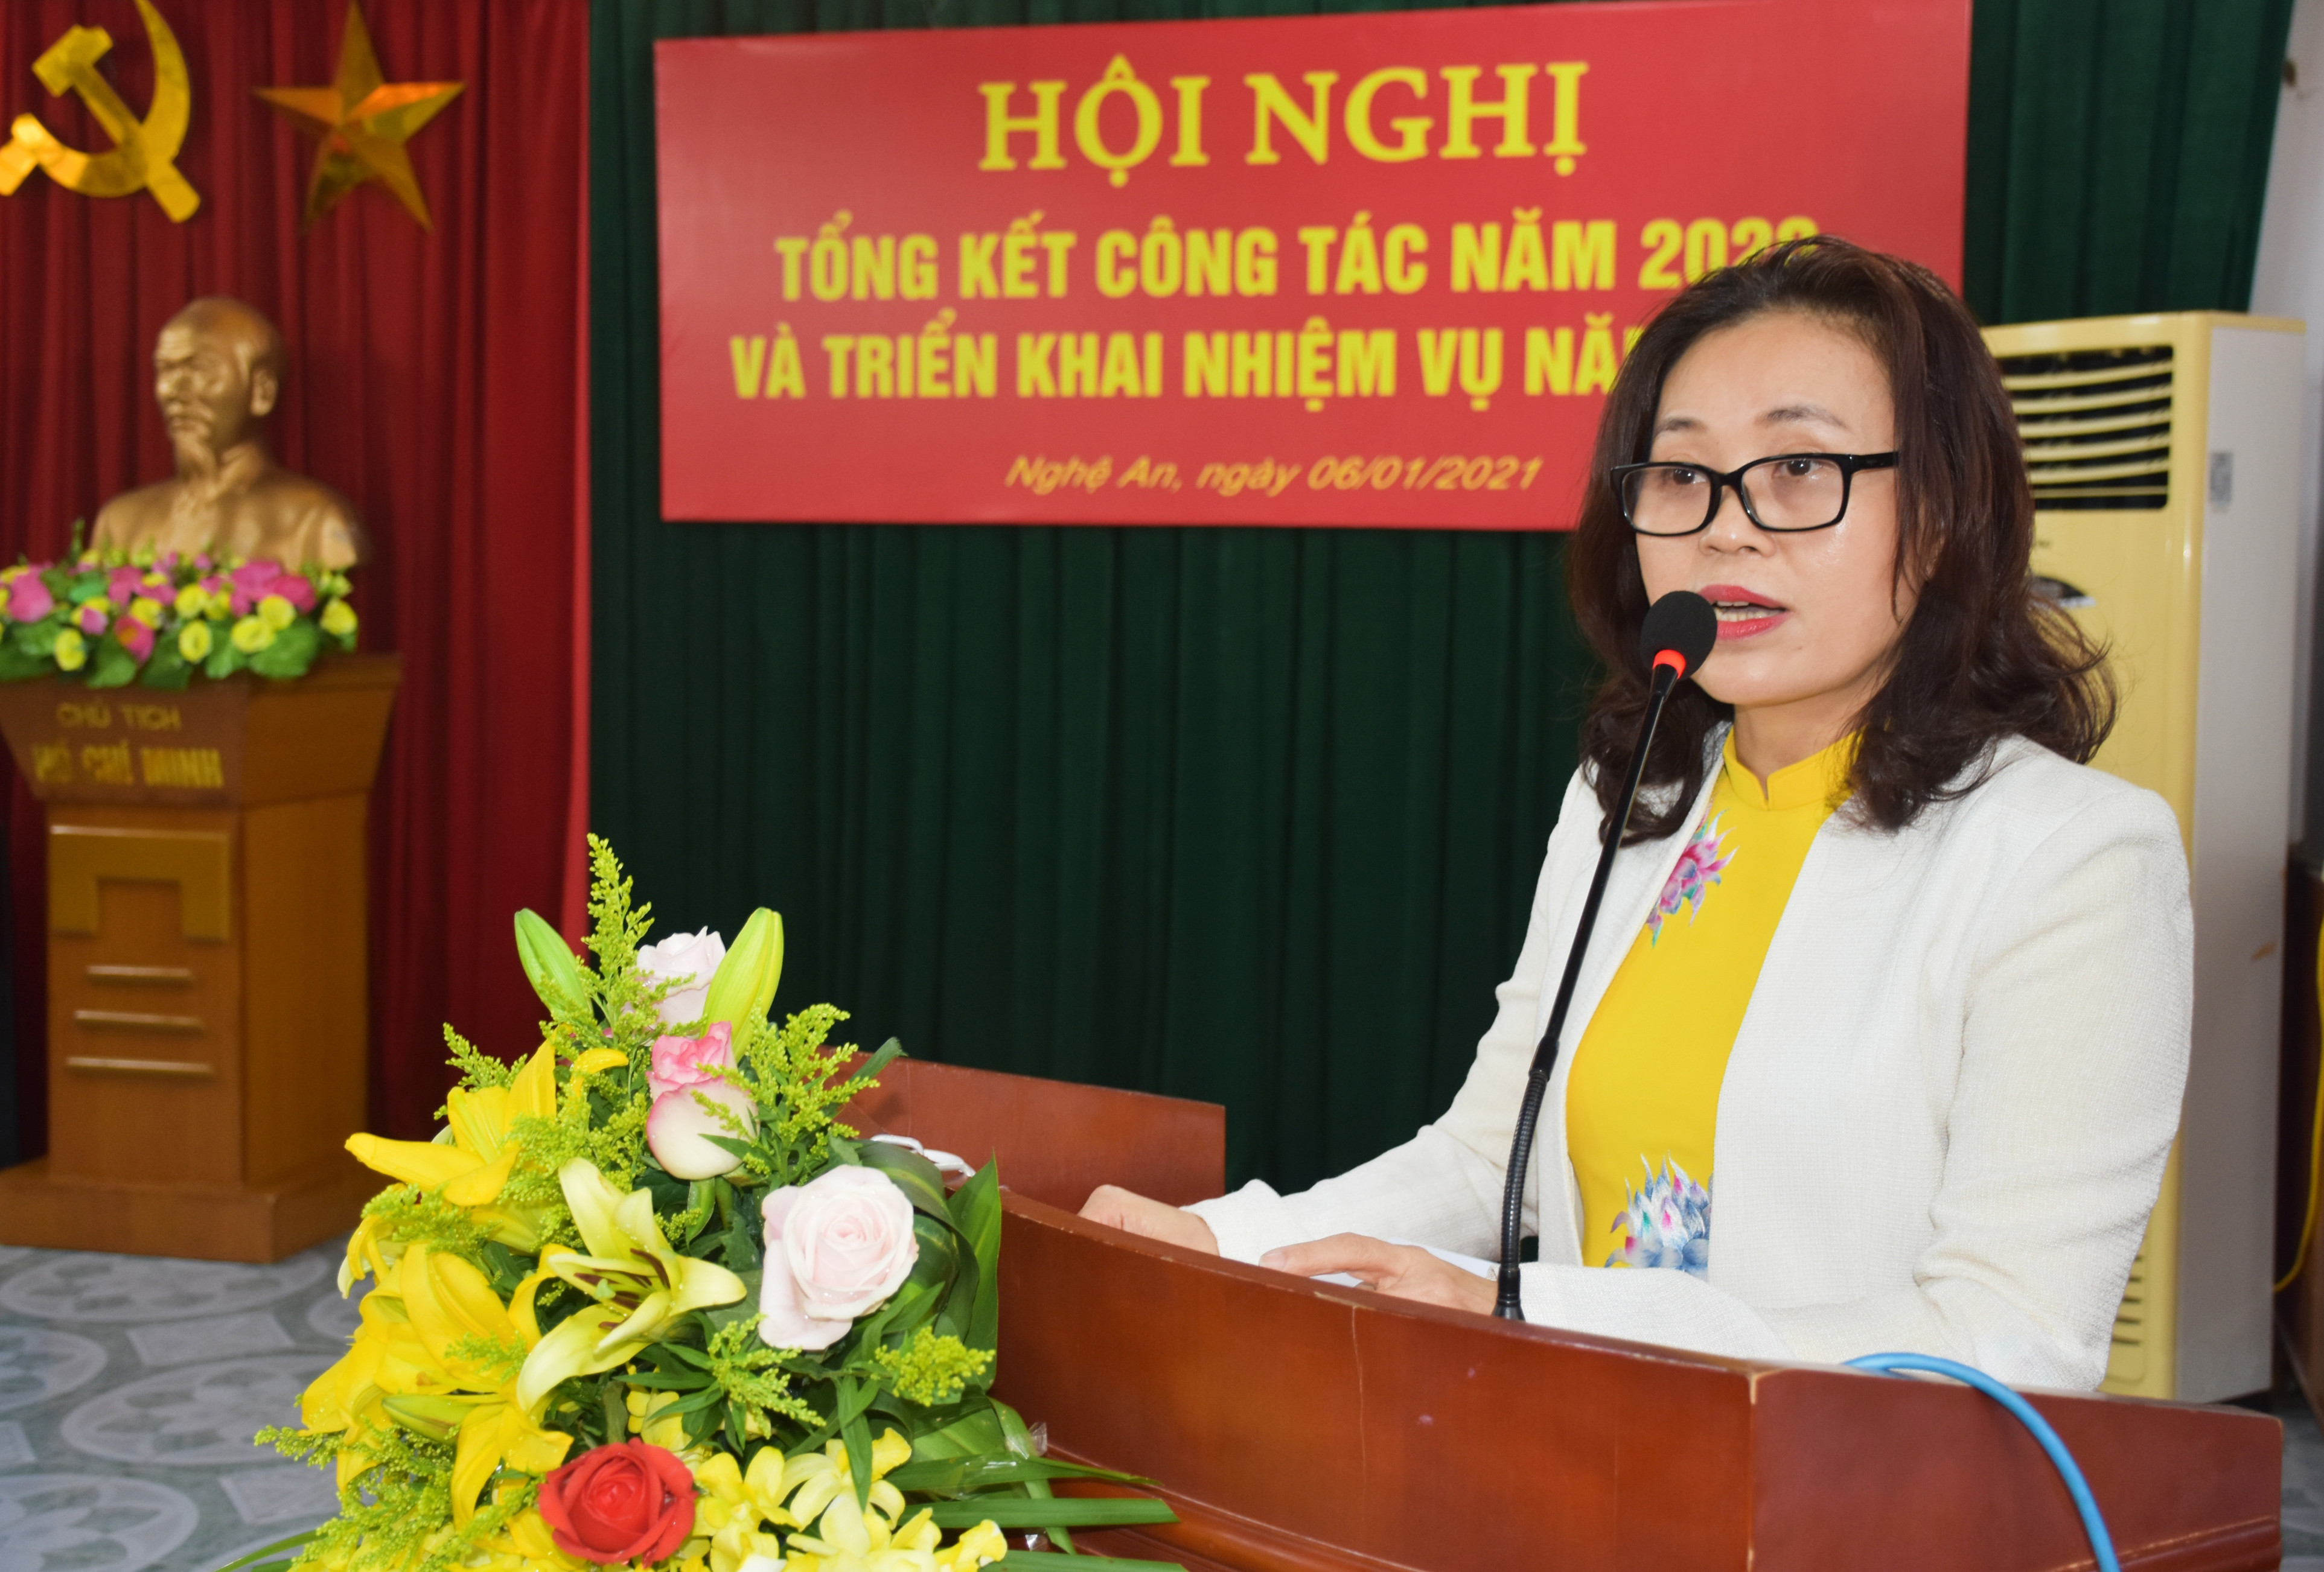 Cục trưởng Cục dự trữ Nhà nước khu vực Nghệ Tĩnh Nguyễn Thị Phố Giang triển khai nhiệm vụ của đơn vị năm 2021: Ảnh: Thanh Lê